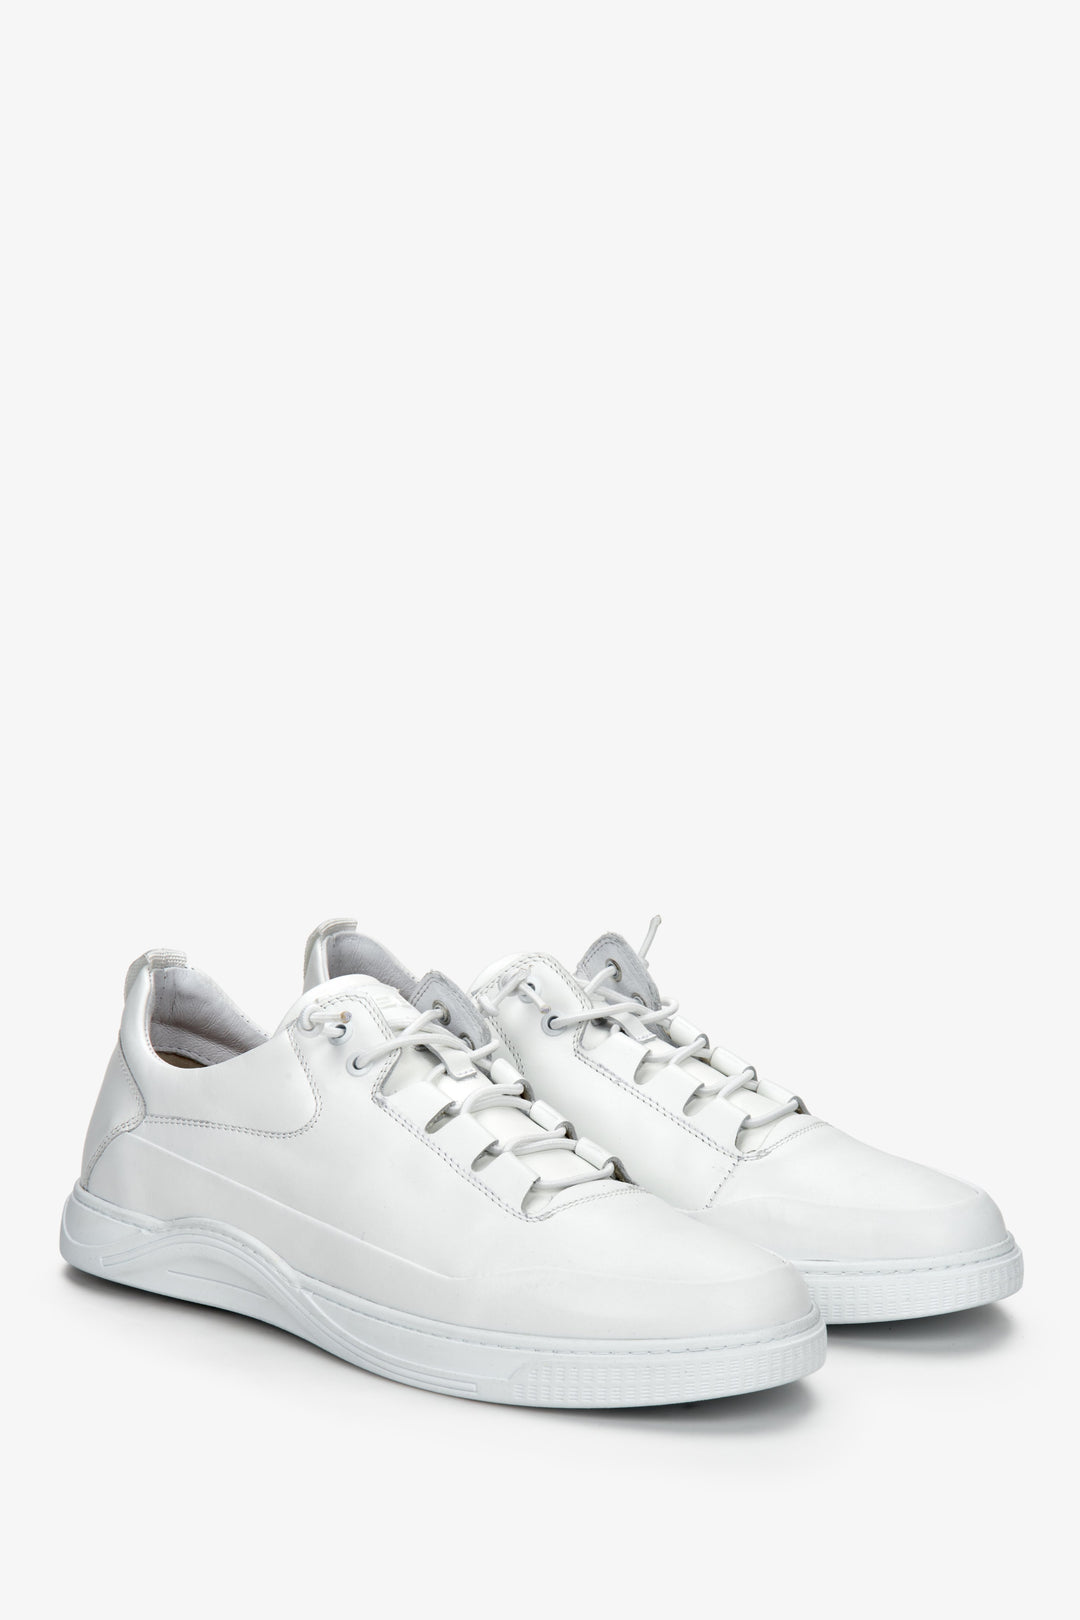 Białe, wiosenne sneakersy męskie ES 8 ze skóry naturalnej - zbliżenie na podeszwę i czubek buta.